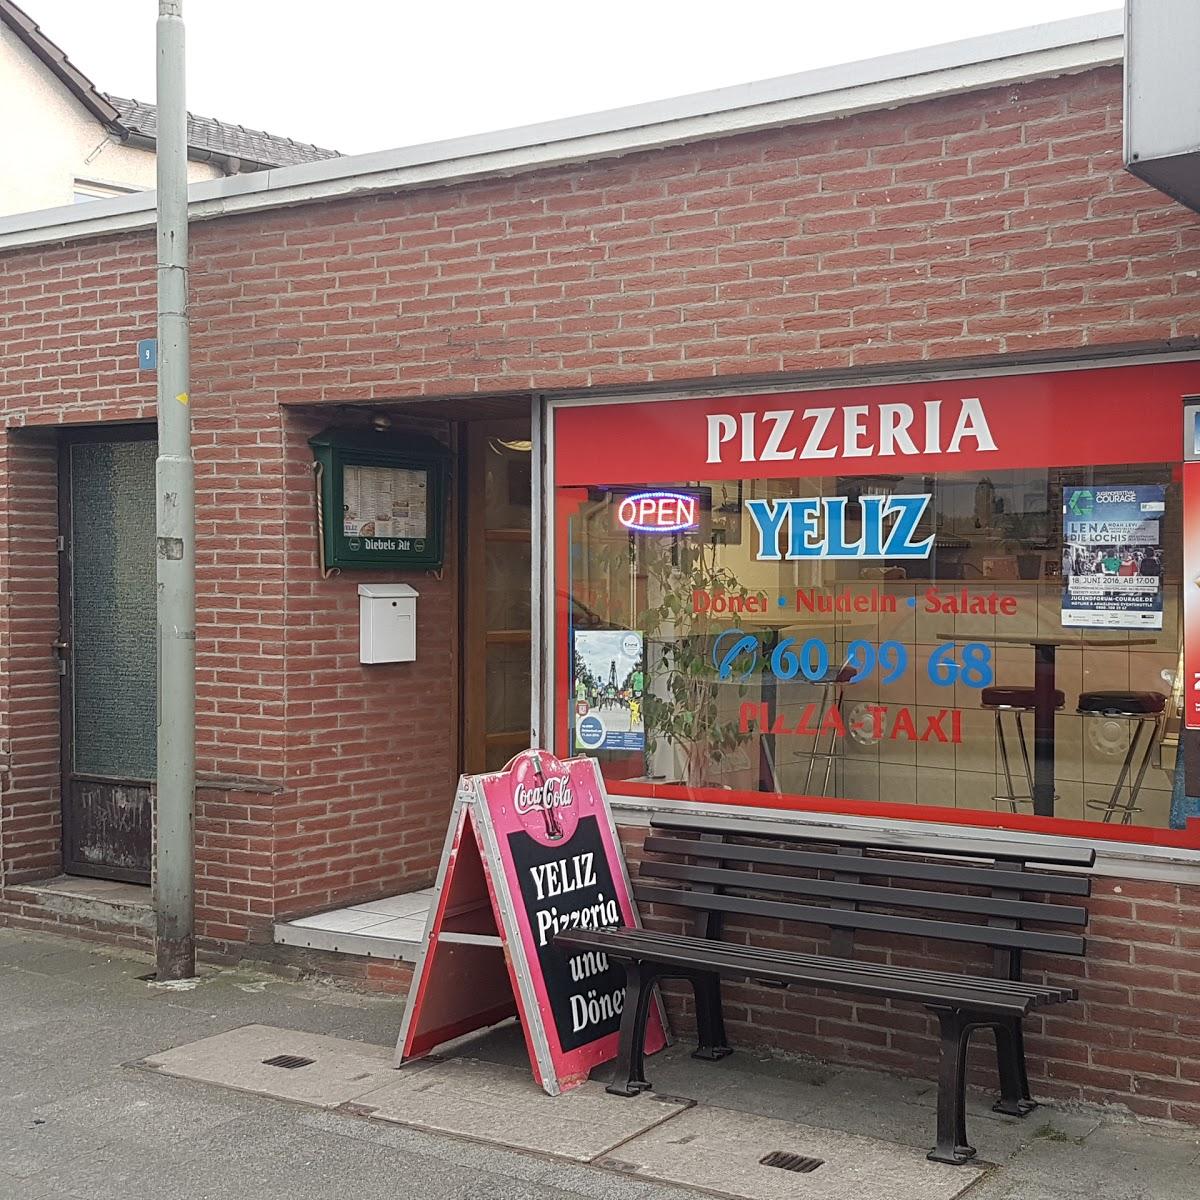 Restaurant "Pizzeria u. Döner Yeliz" in  Rheurdt